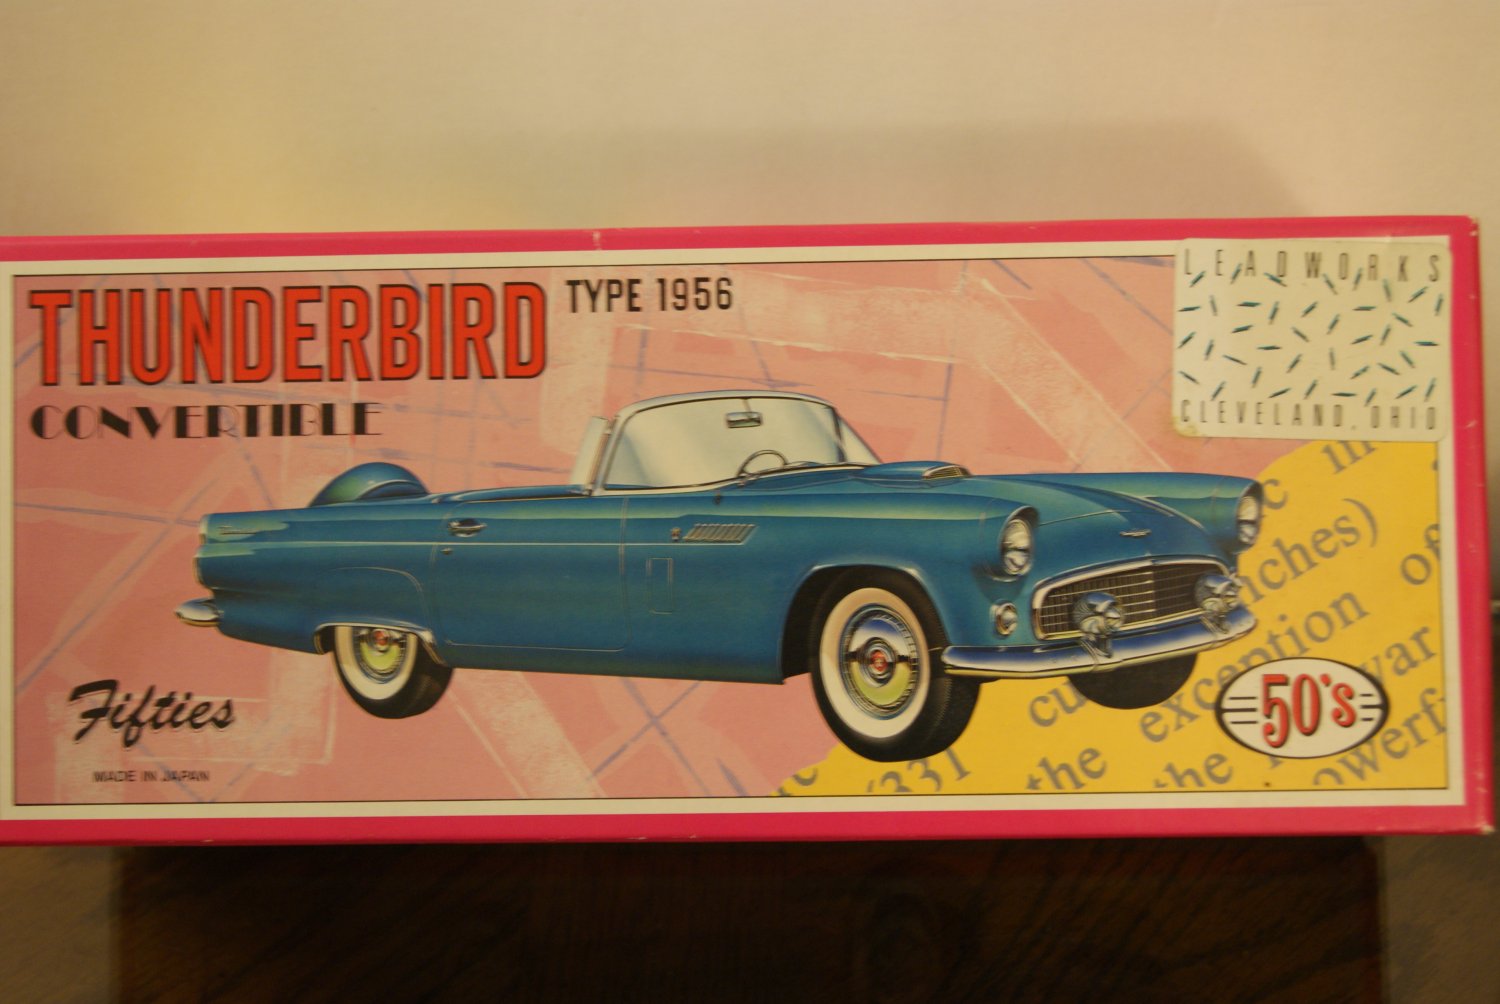 1956 Thunderbird / Die-cast car